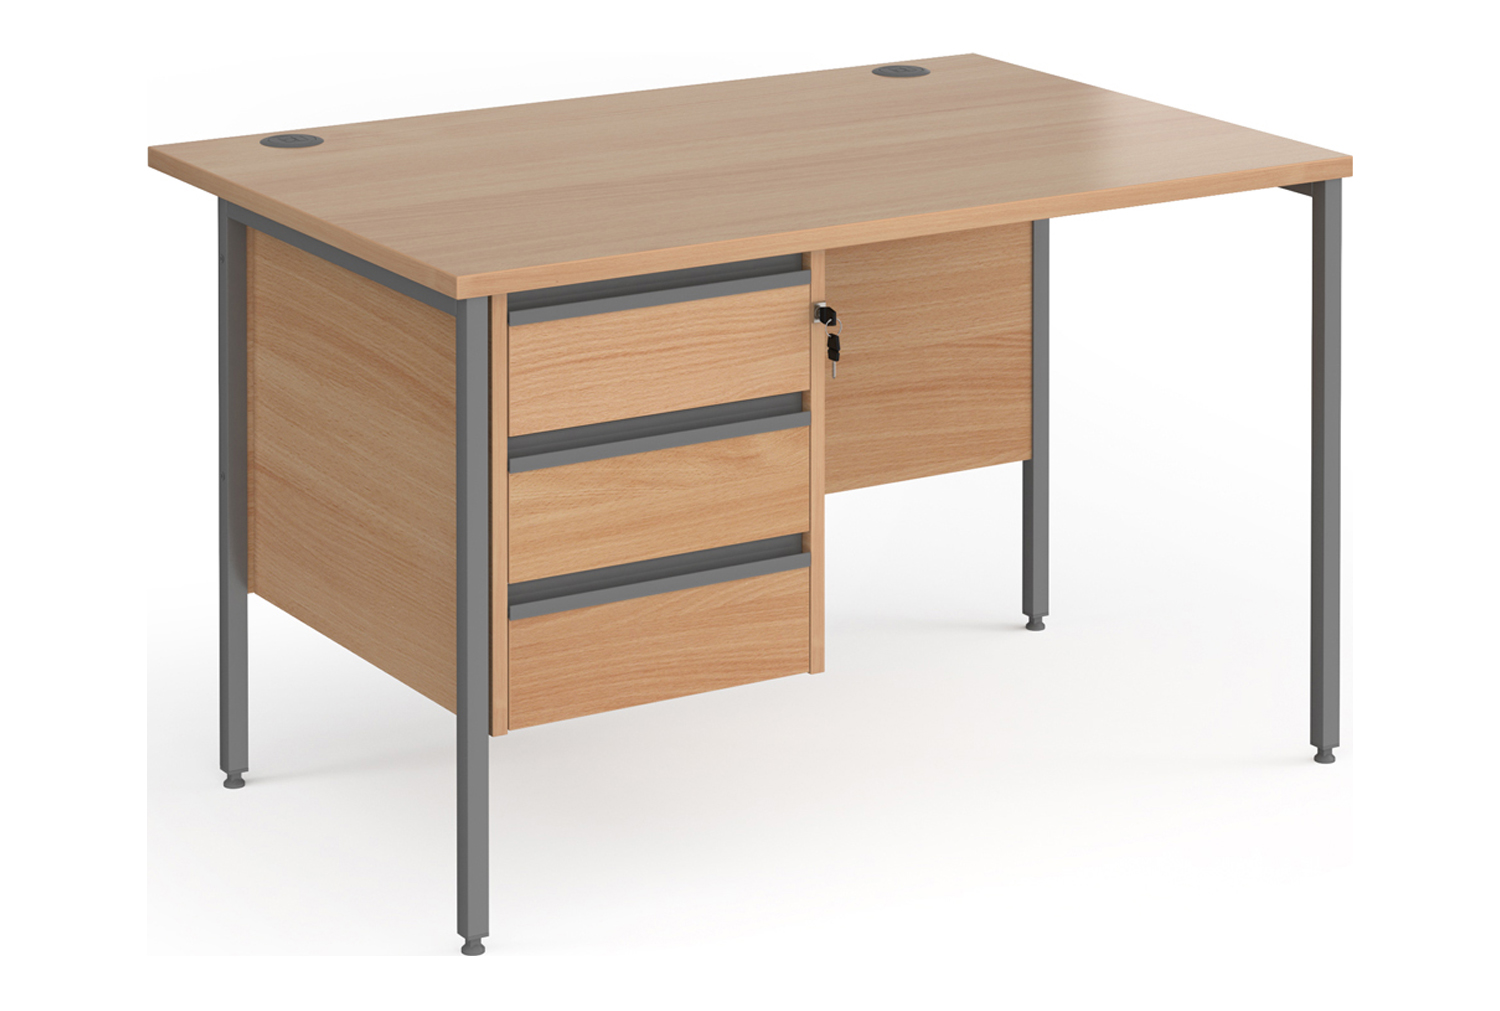 Value Line Classic+ Rectangular H-Leg Office Desk 3 Drawers (Graphite Leg), 120wx80dx73h (cm), Beech, Fully Installed